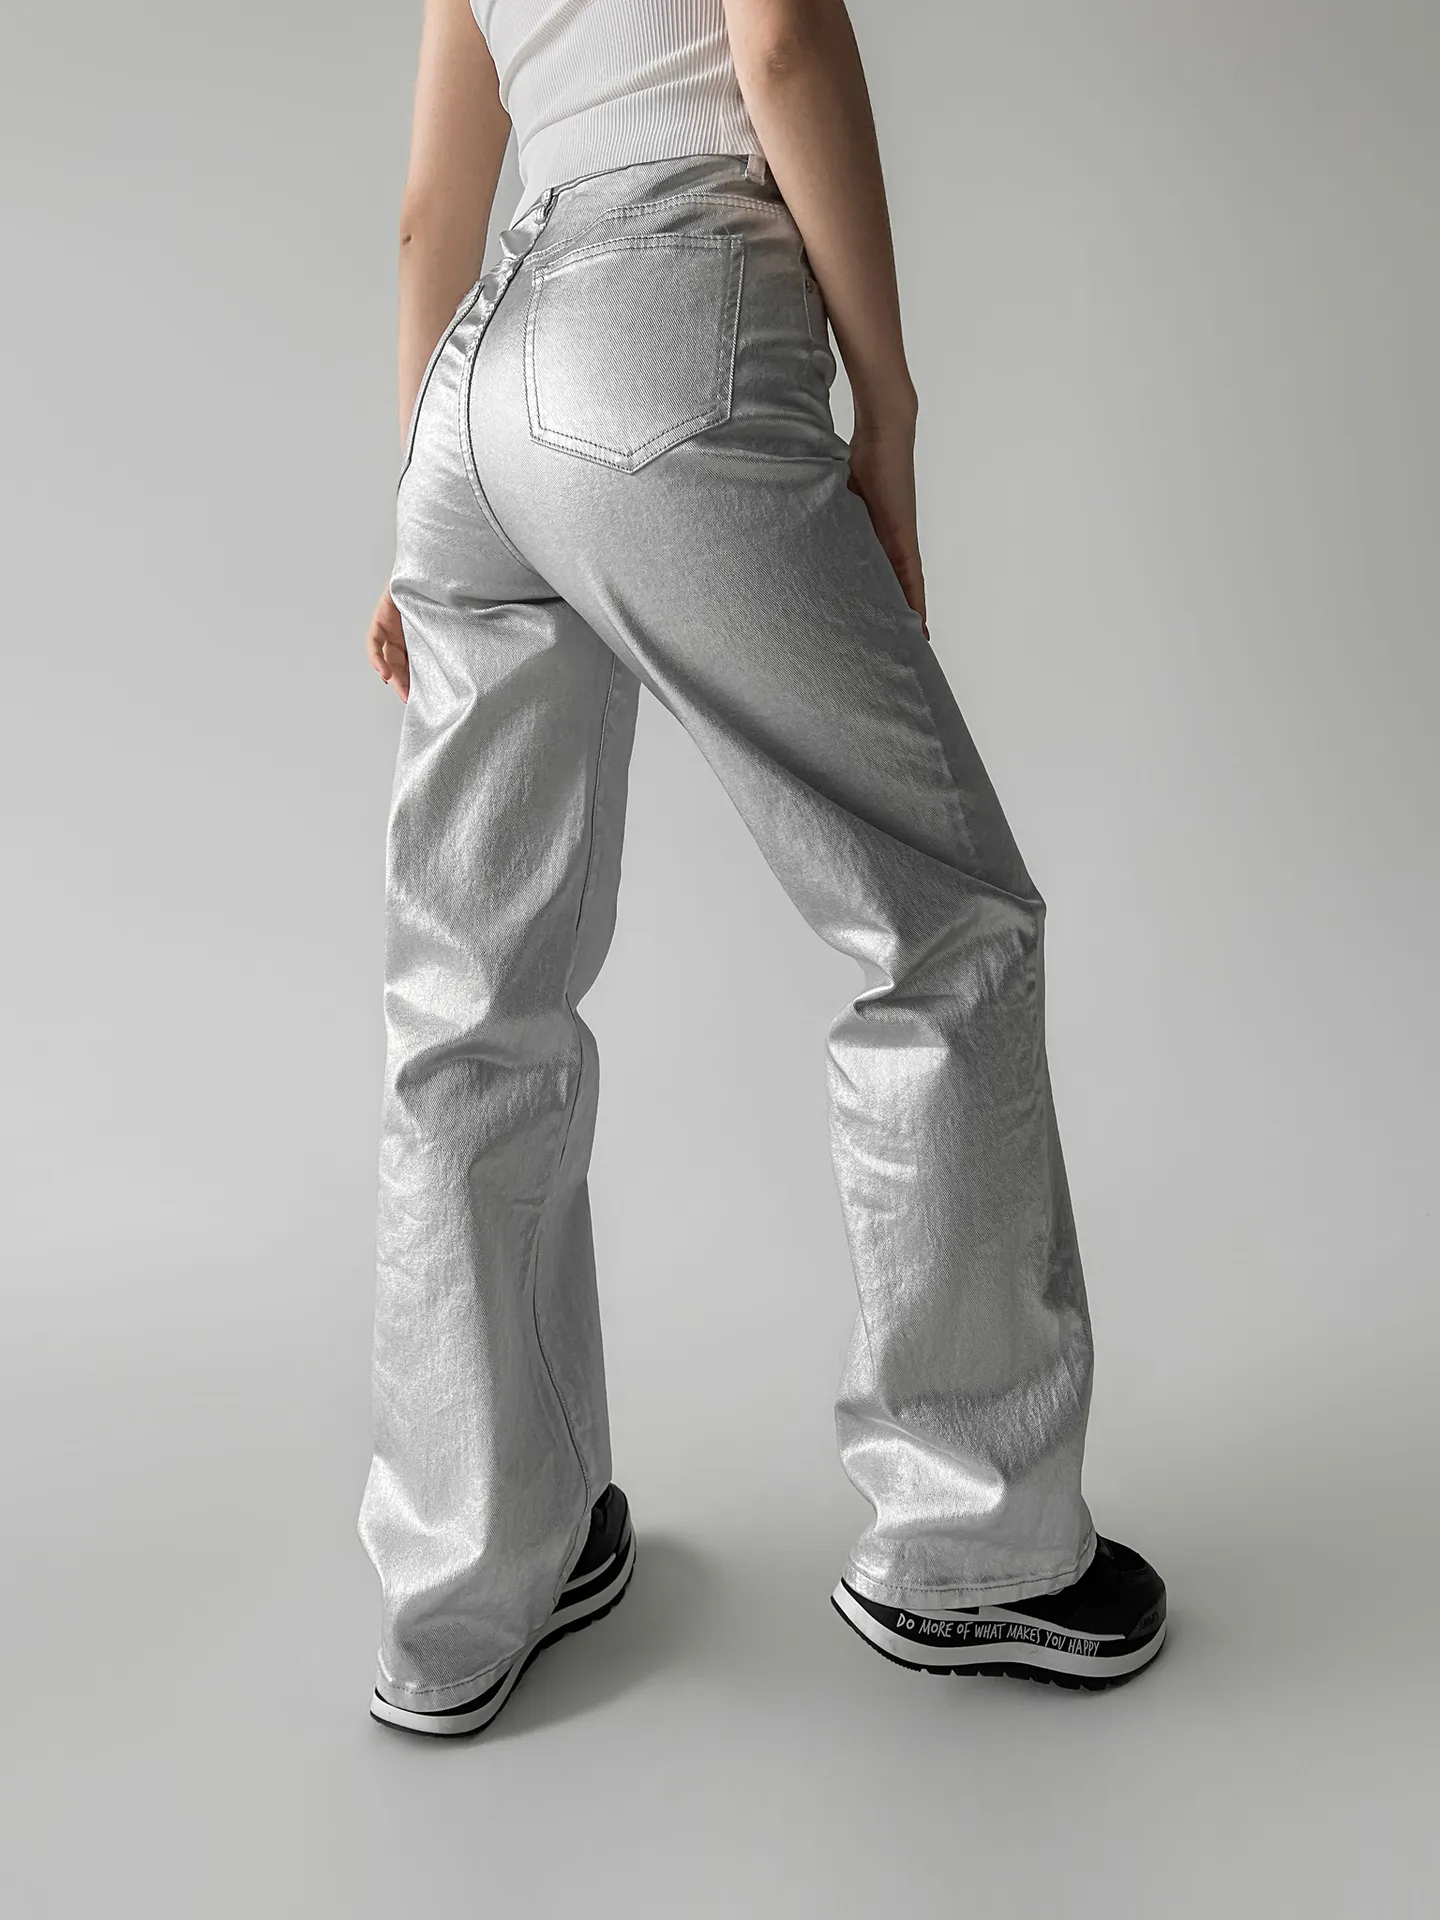 Штаны Fashion Jeans 692 широкие однотонные с напылением